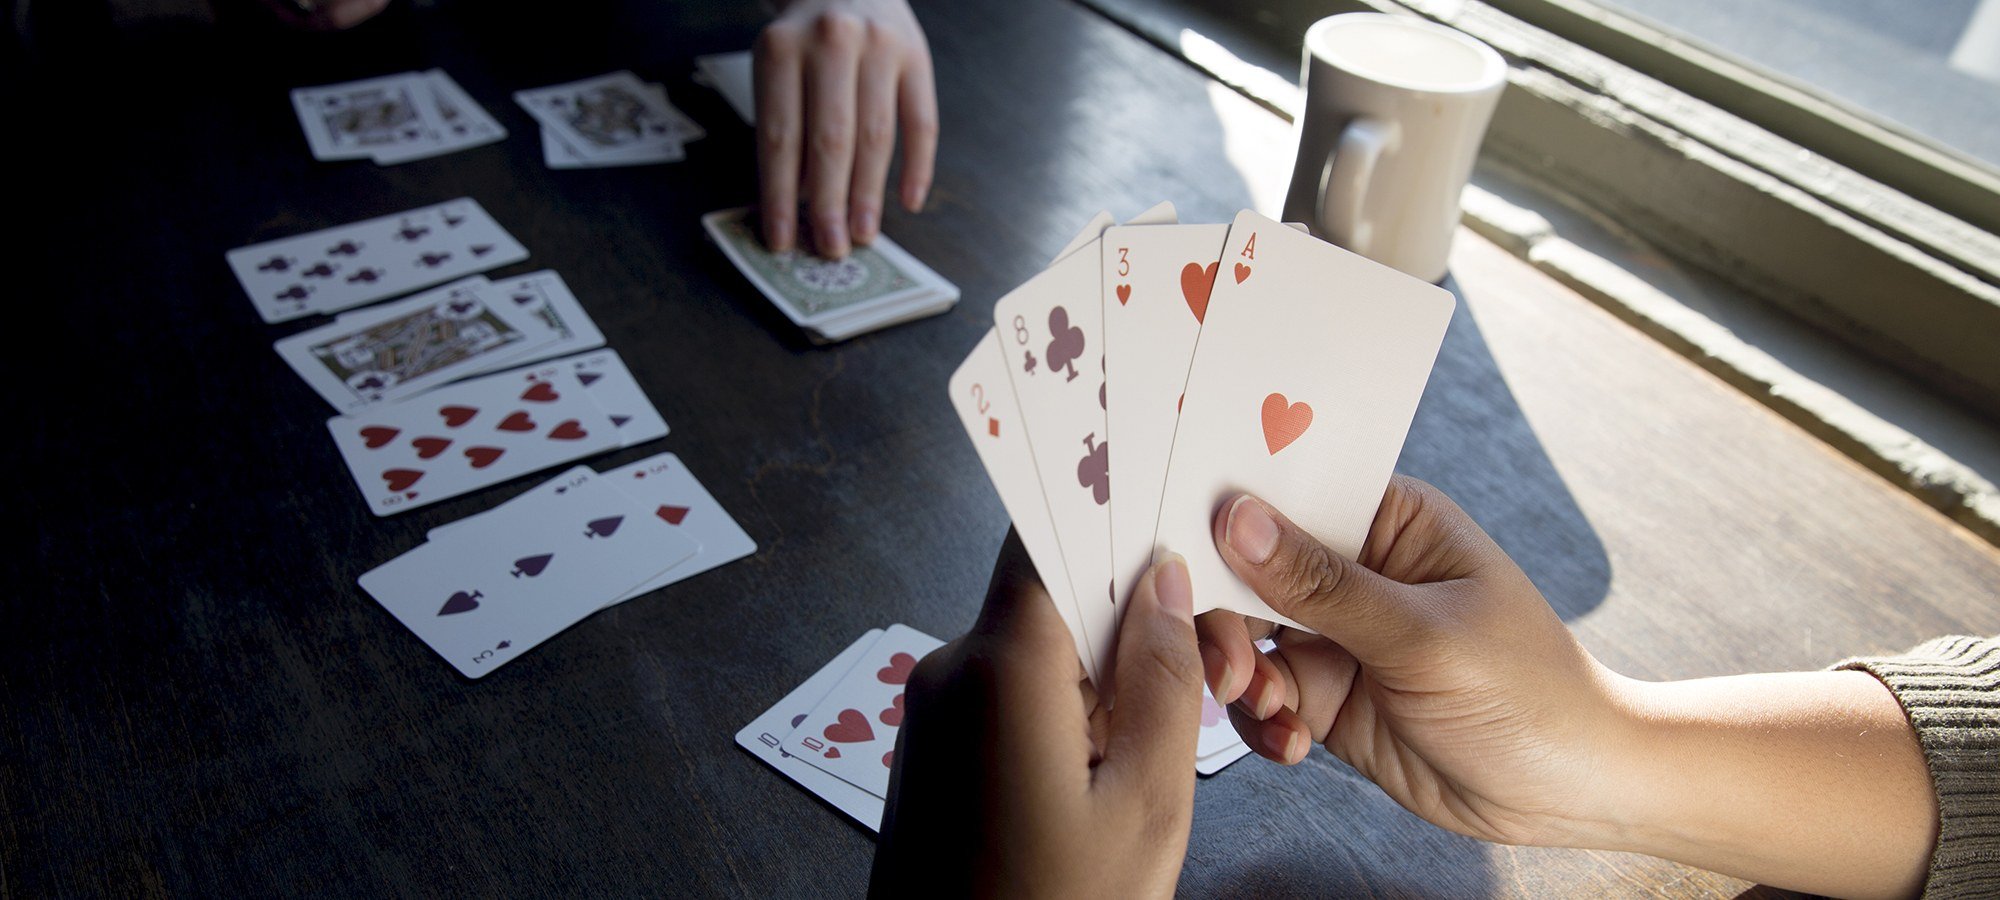 durak card game rukes